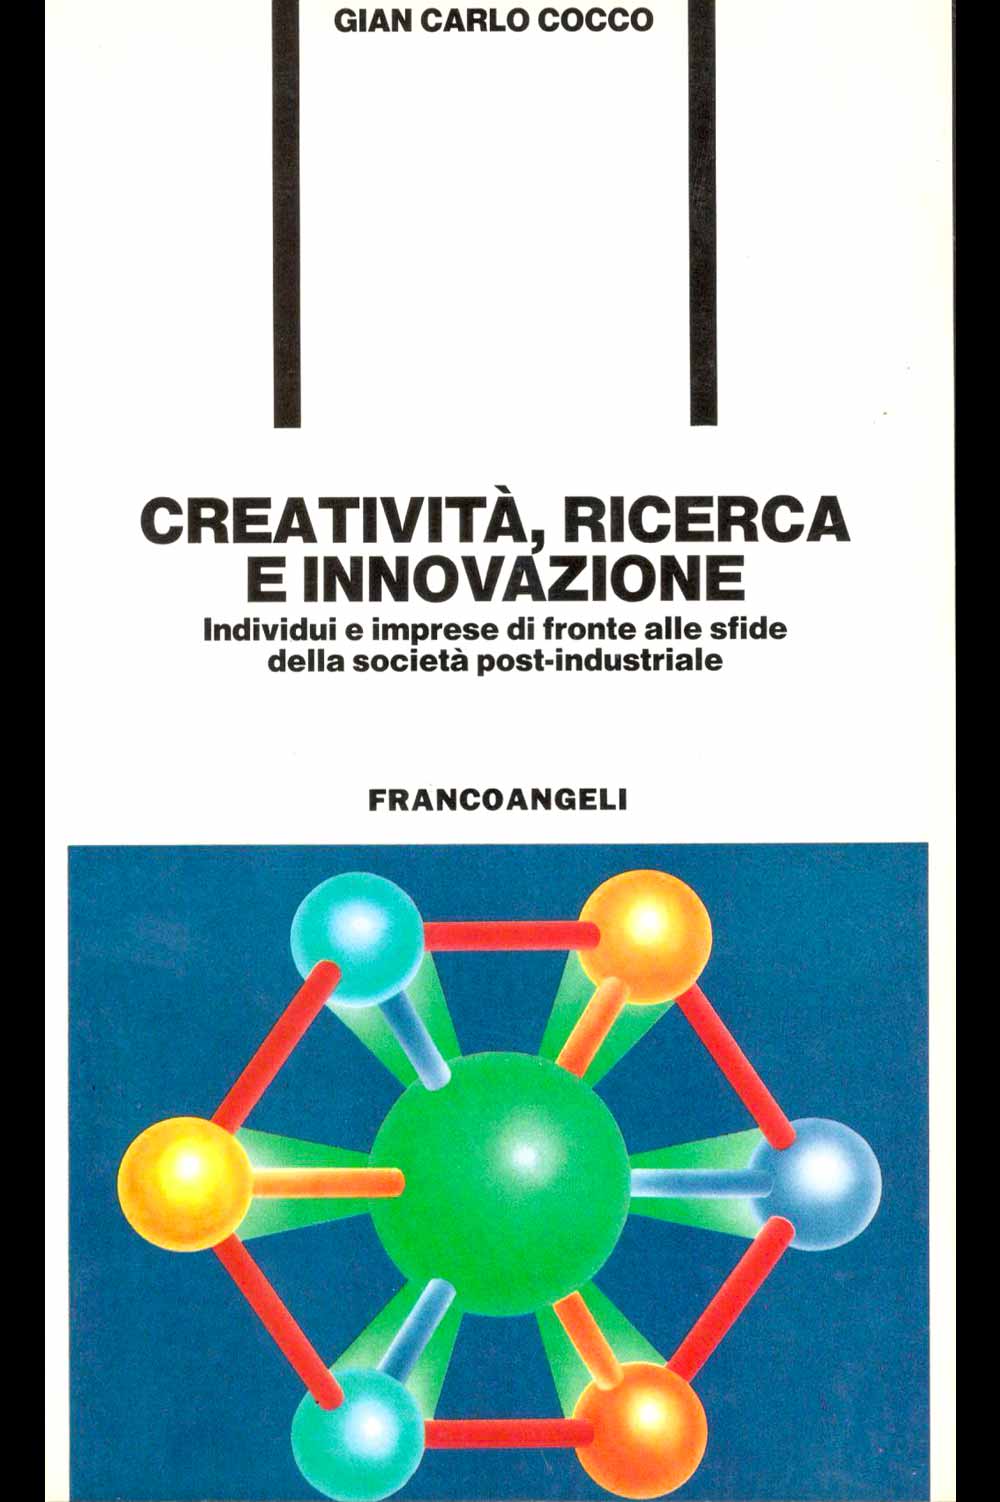 Creatività, ricerca e innovazione - Gian Carlo Cocco